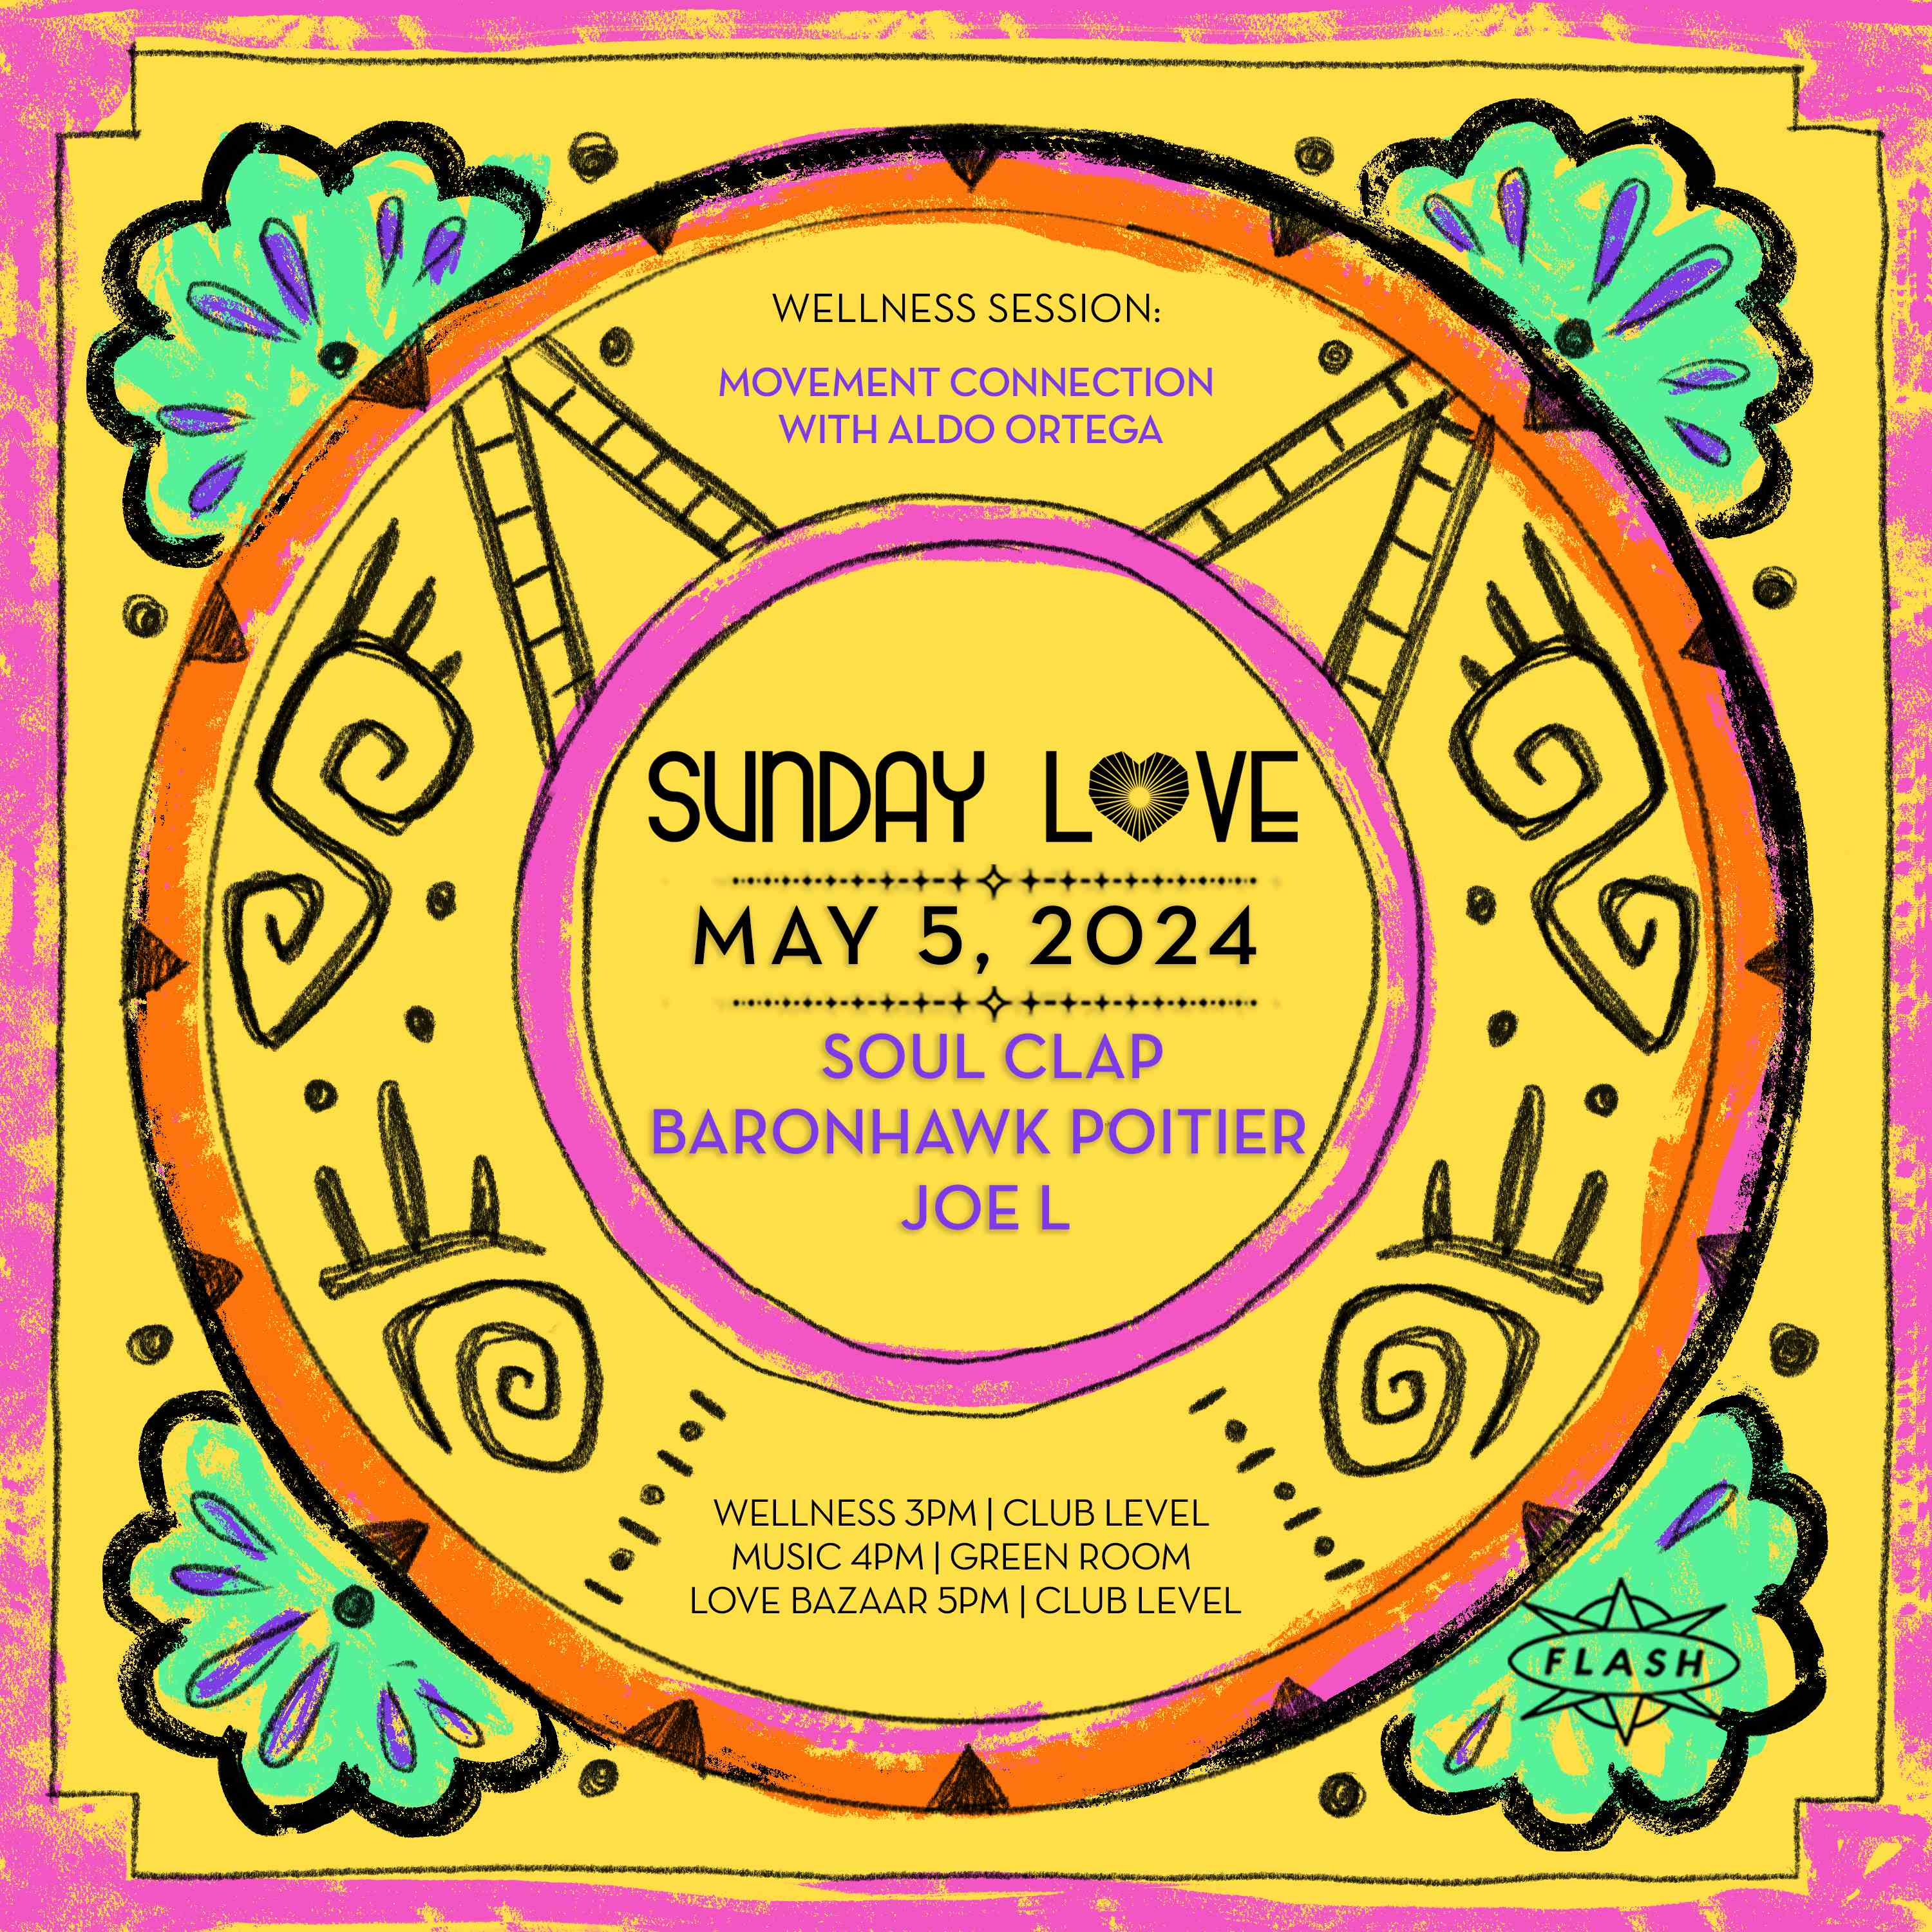 Sunday Love: Soul Clap - Baronhawk Poitier - Joe L event flyer